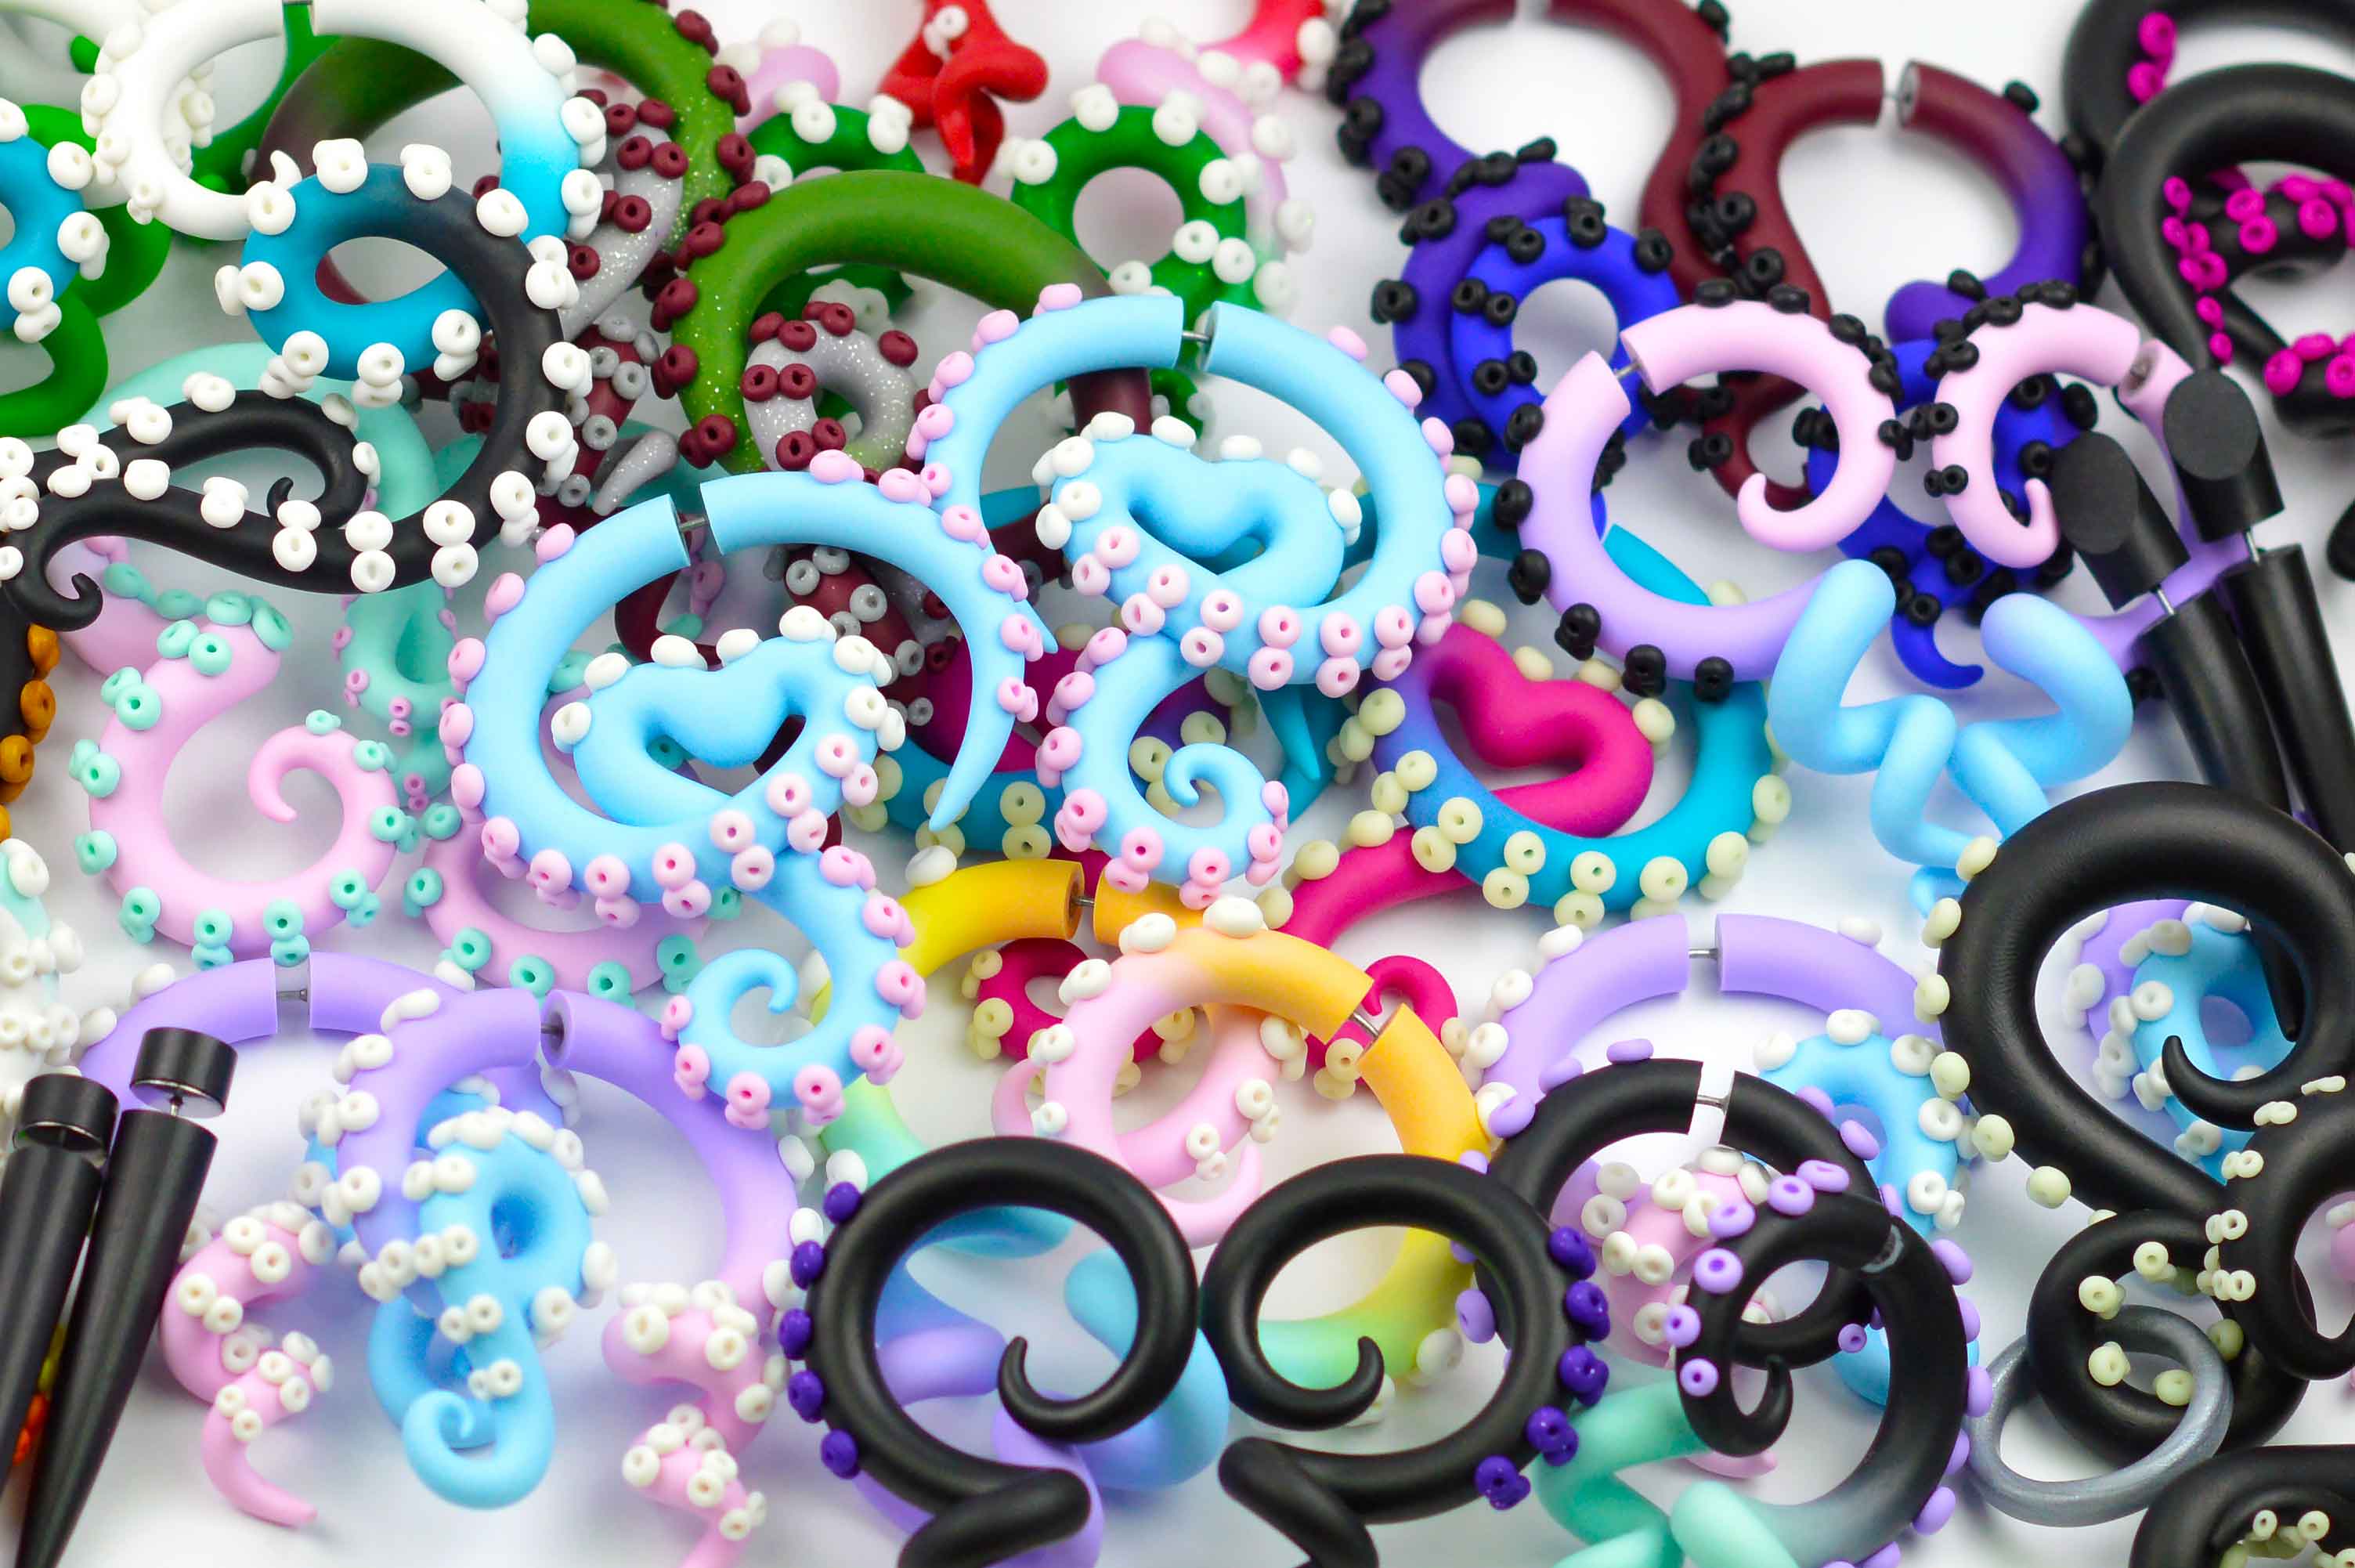 Custom made octopus tentacle earrings — ear gauges and fake gauges